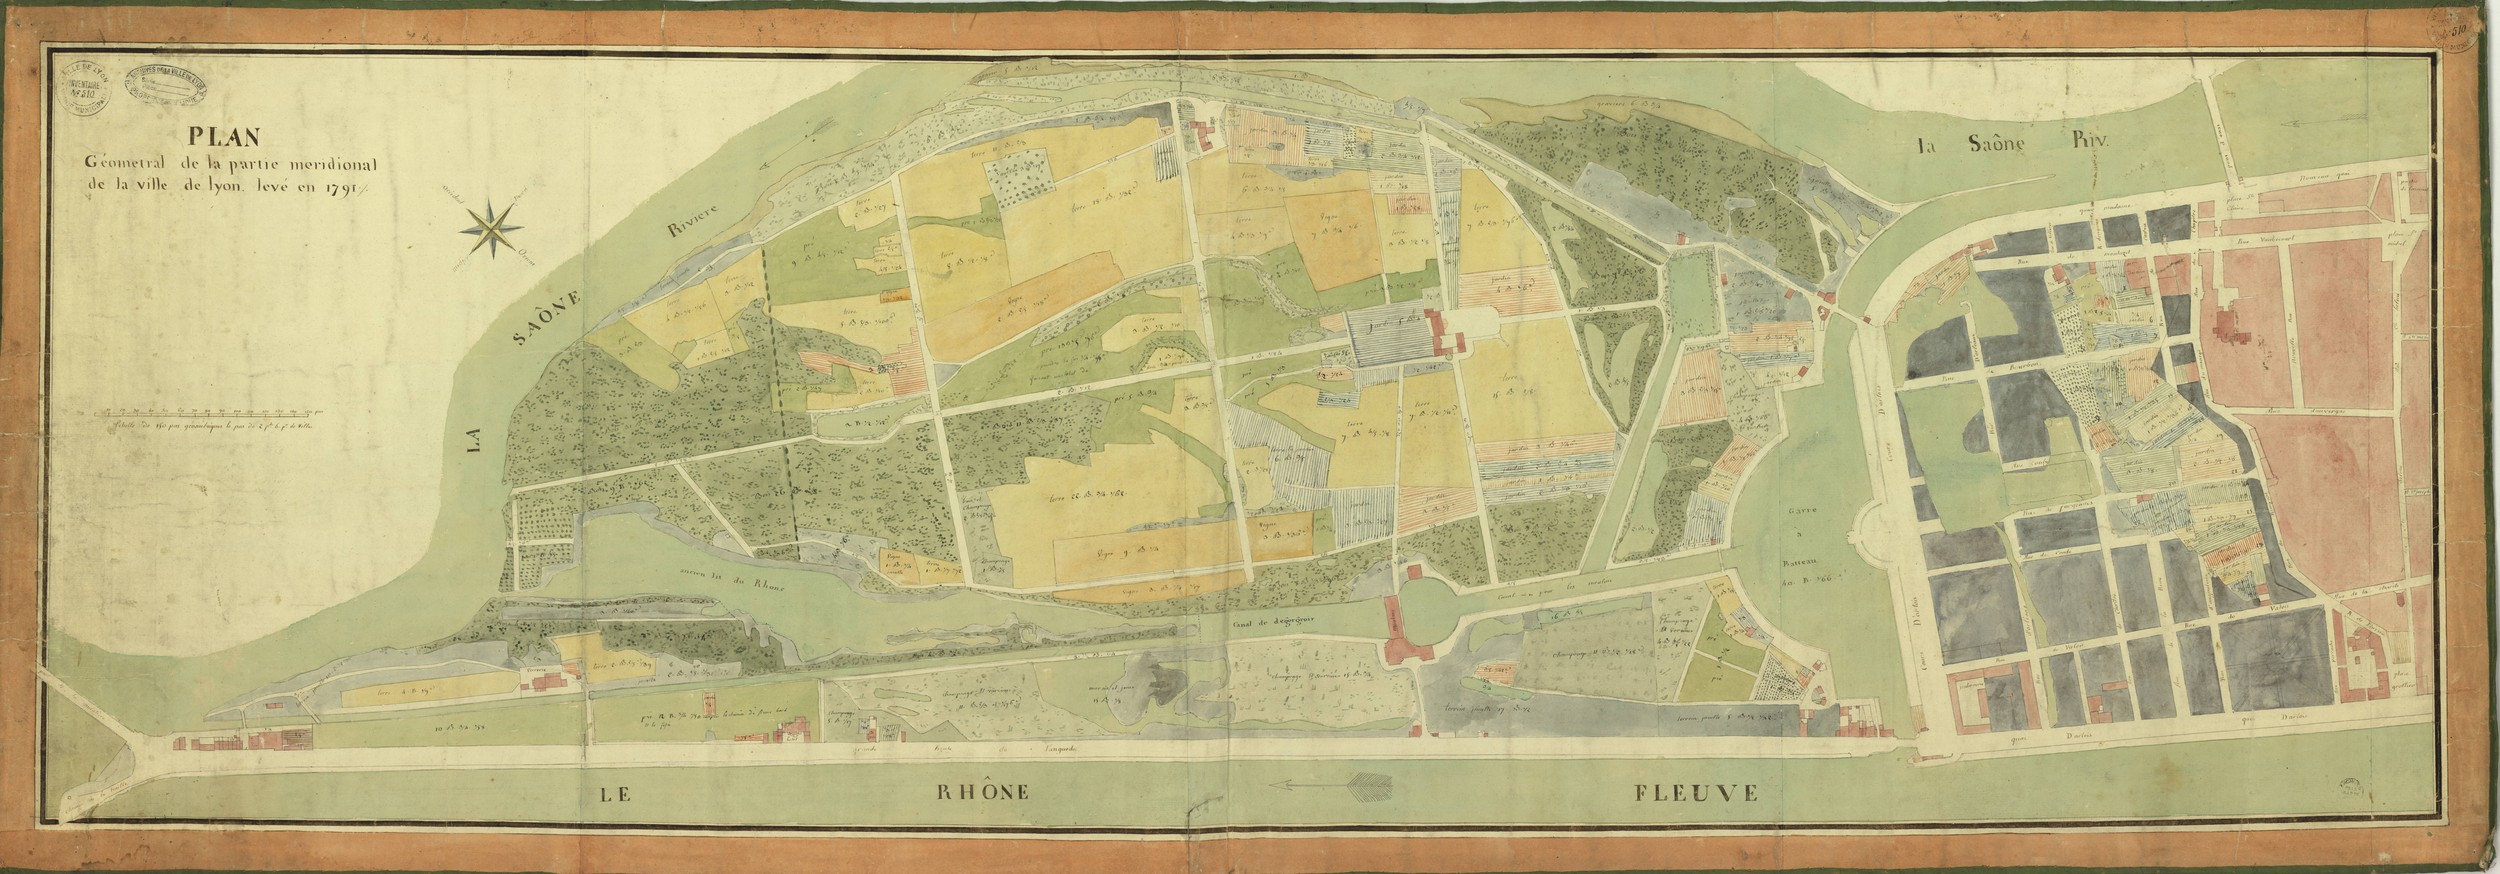 Plan géométral de la partie méridionale de la Ville de Lyon levé en 1791 : plan manuscrit en couleur (1791, cote : 1S/25)